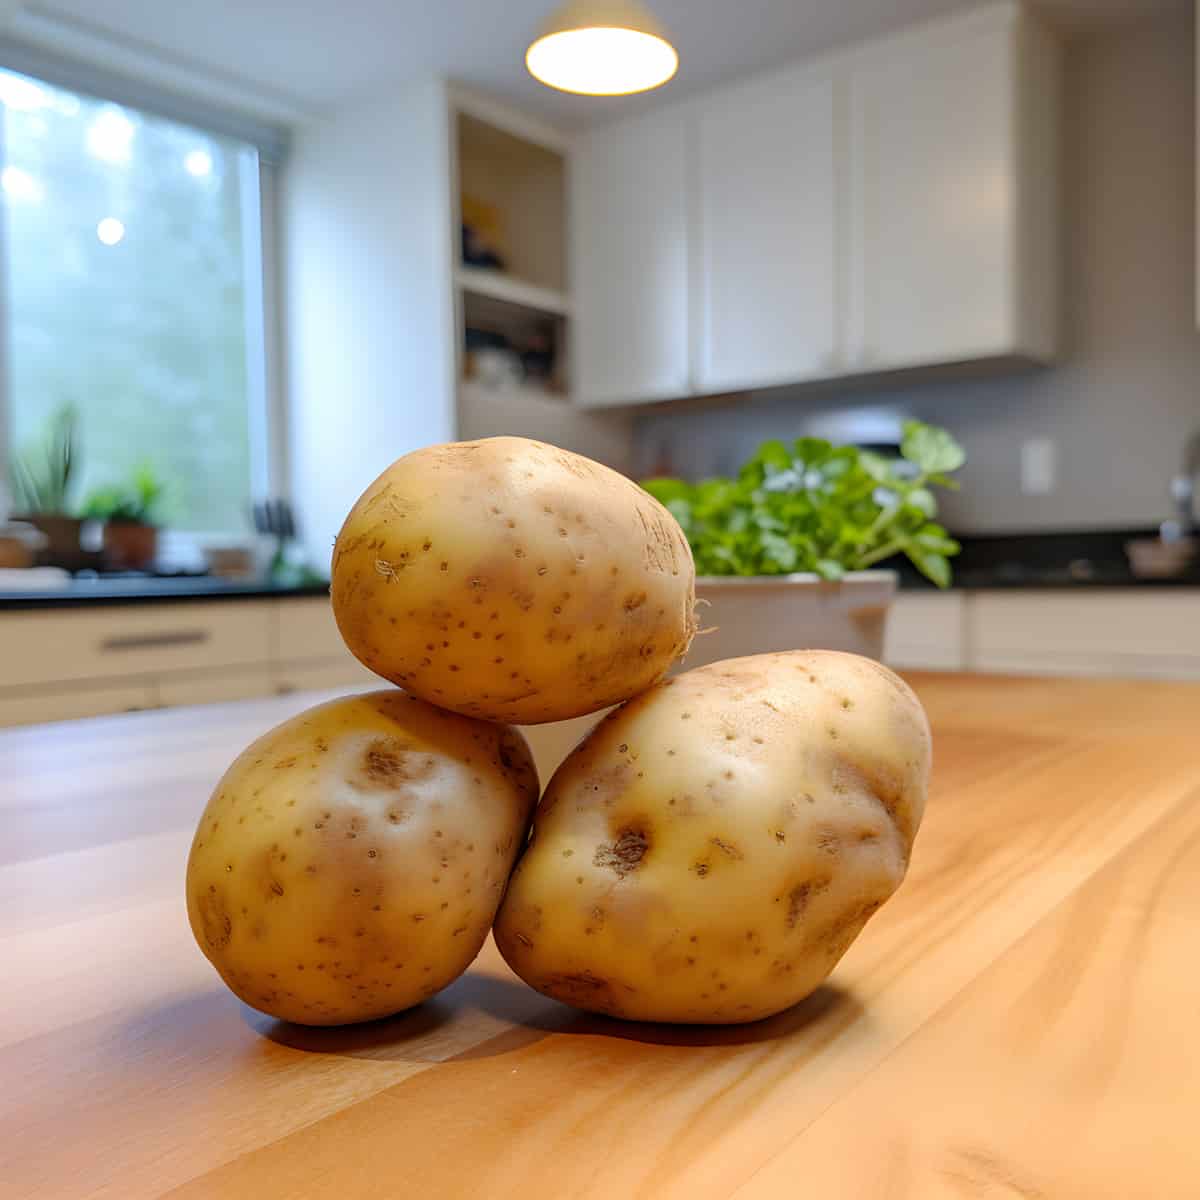 Dejima Potatoes on a kitchen counter